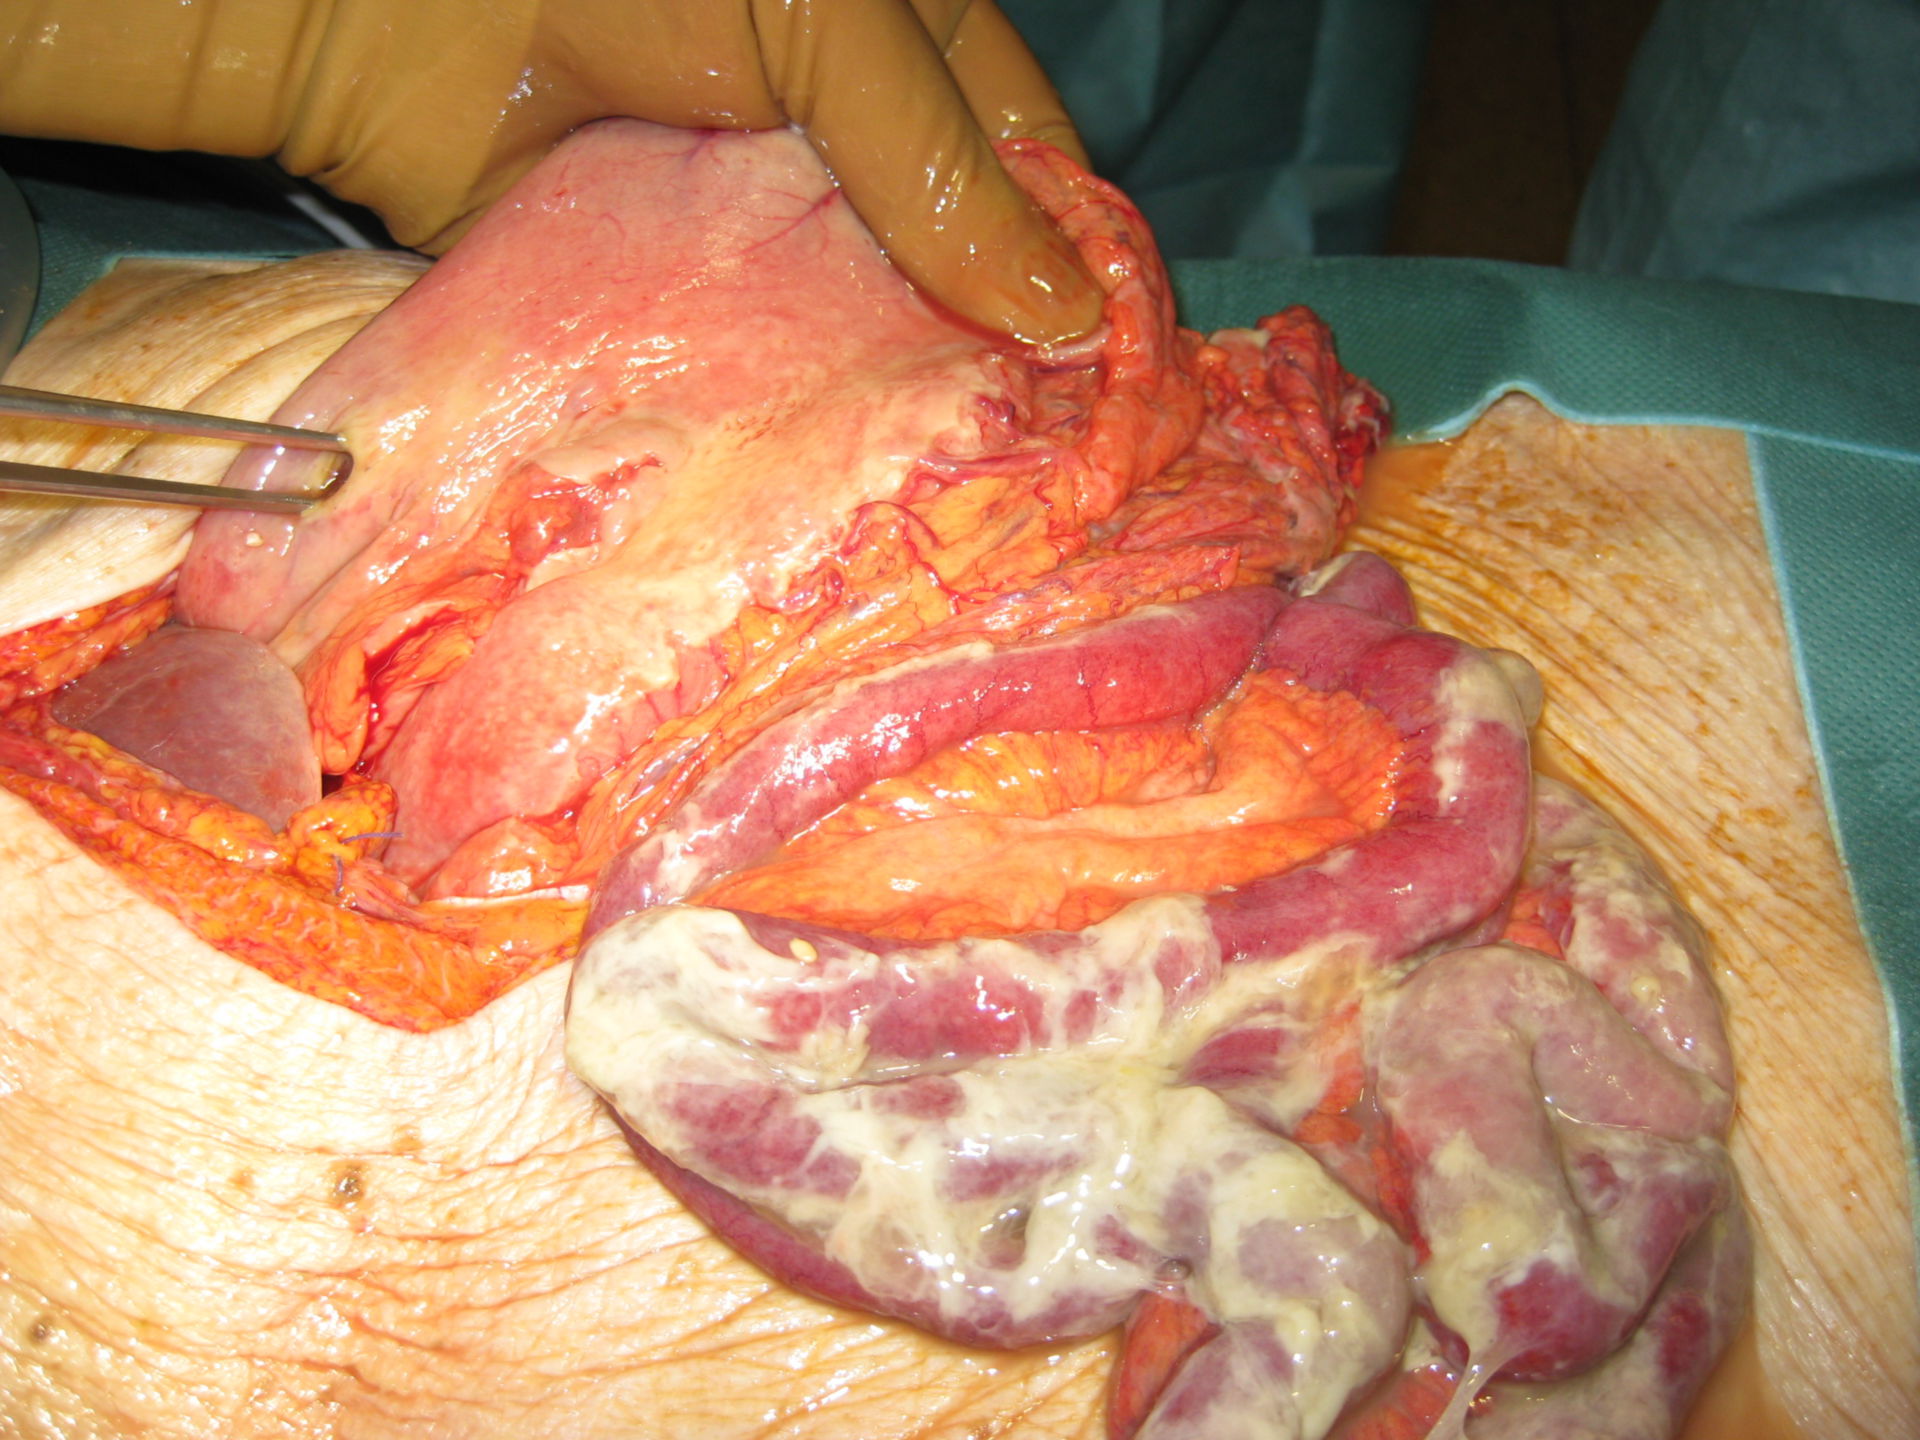 Perforación gástrica que conlleva a una peritonitis difusa